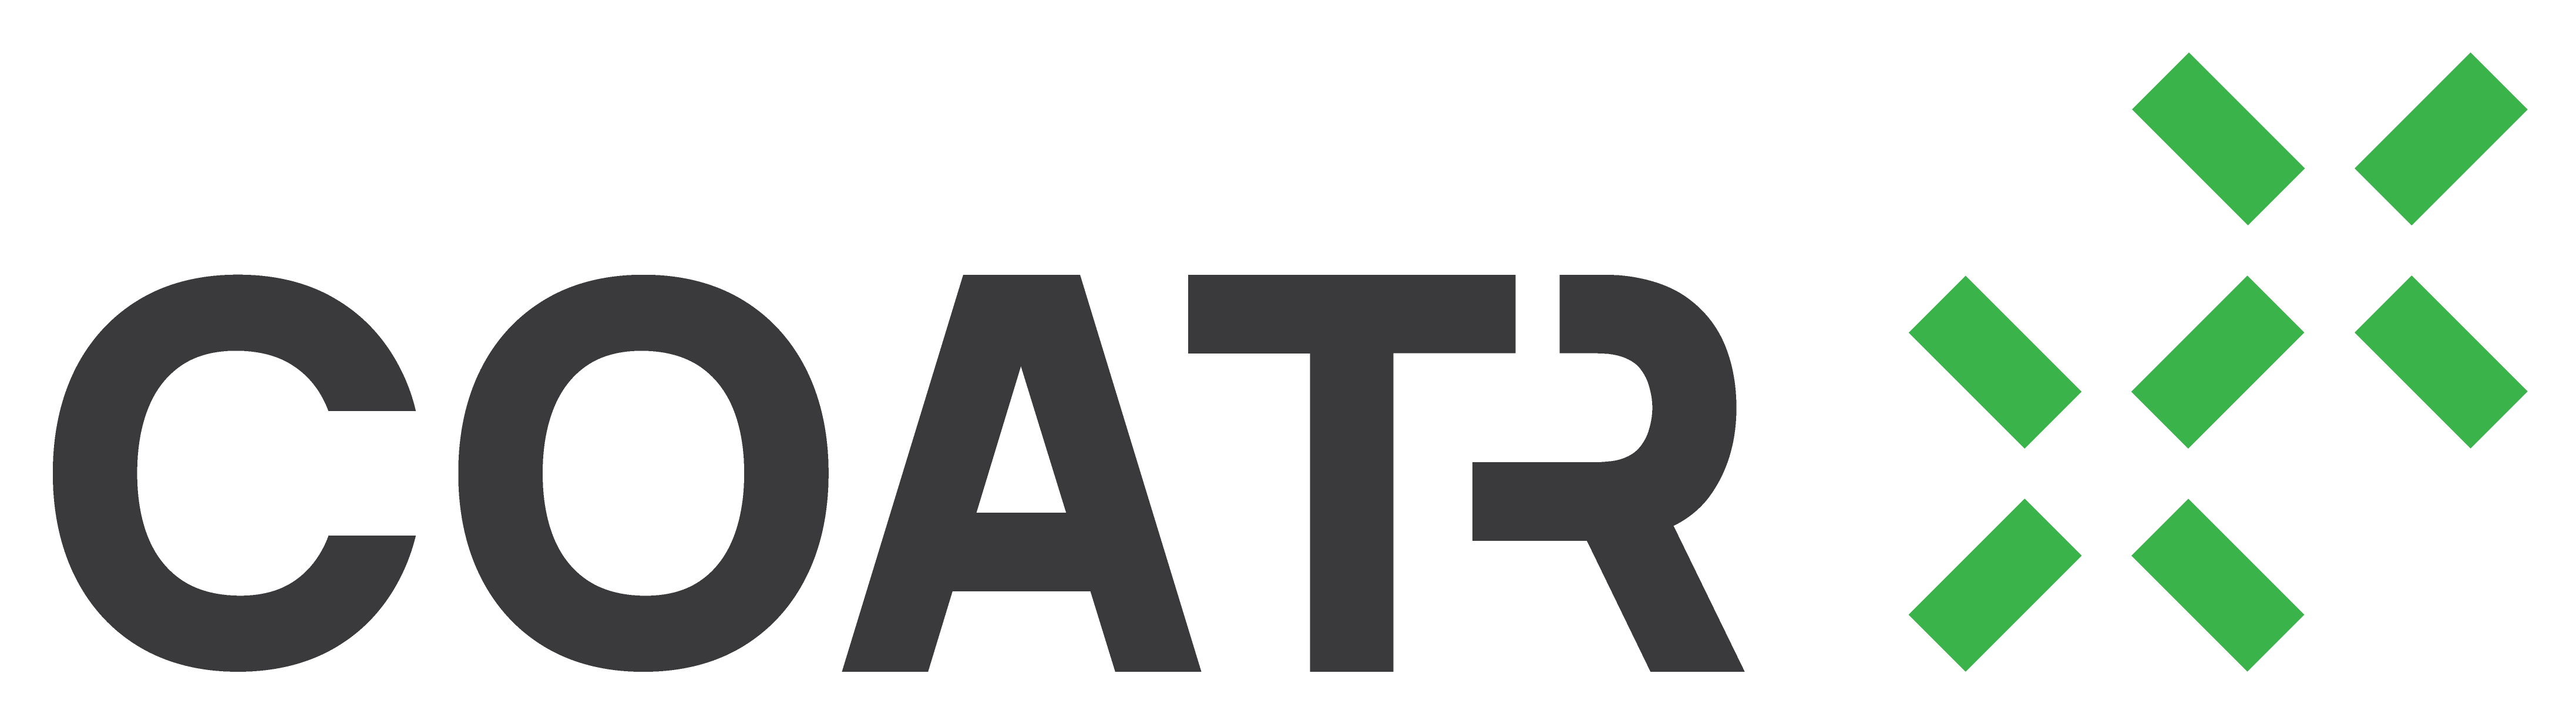 Logo-coatr